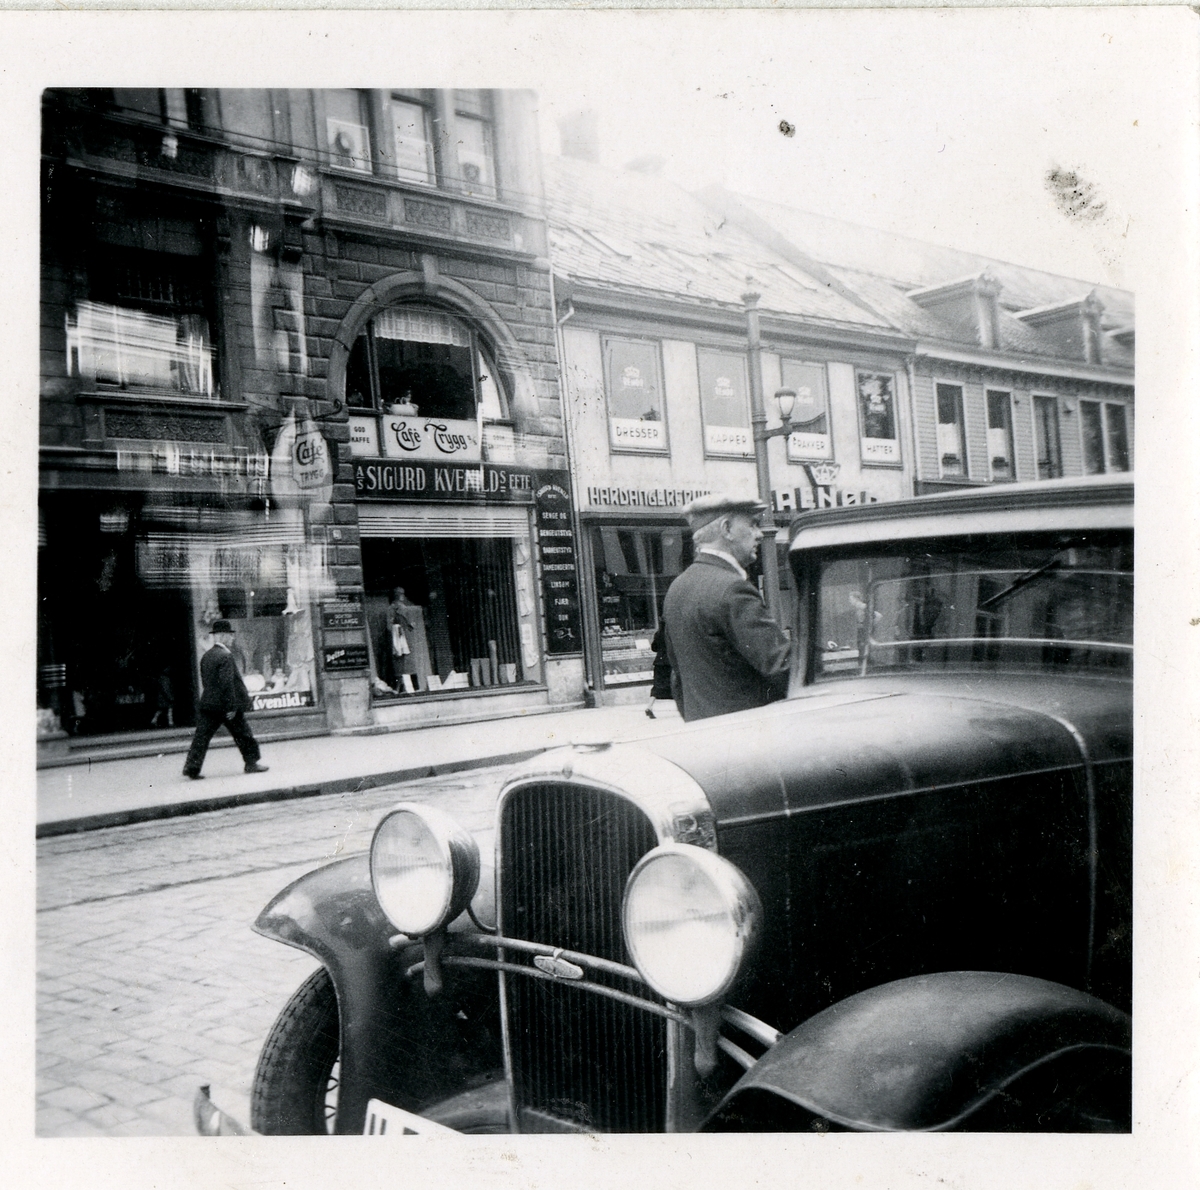 Fra familiealbum. Fotografi tatt fra gaten mot ulike forretninger, nummer 21 og 18 i Olav Tryggvasons gate Trondheim.
Bilen er en Oldsmobile 1932 modell.